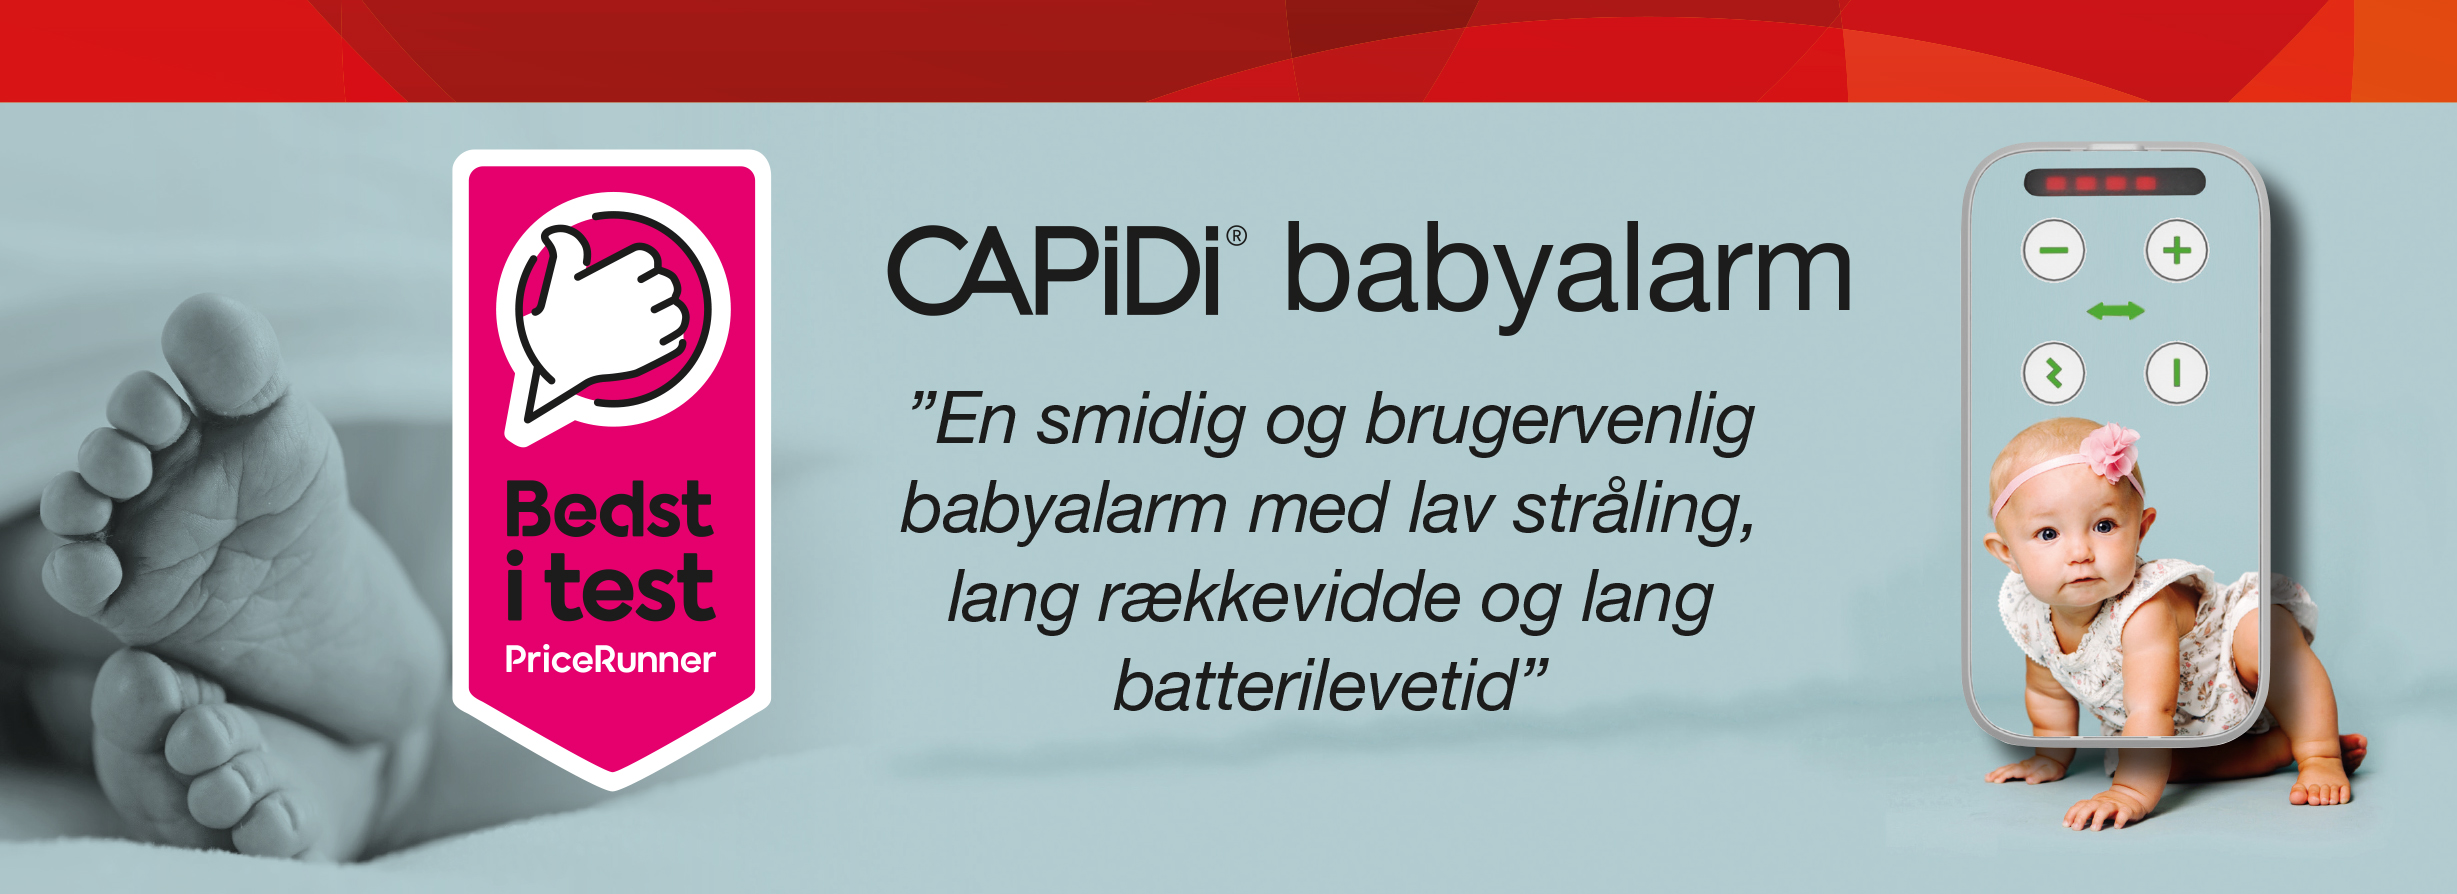 CAPiDi-header-1920x700_DK.jpg